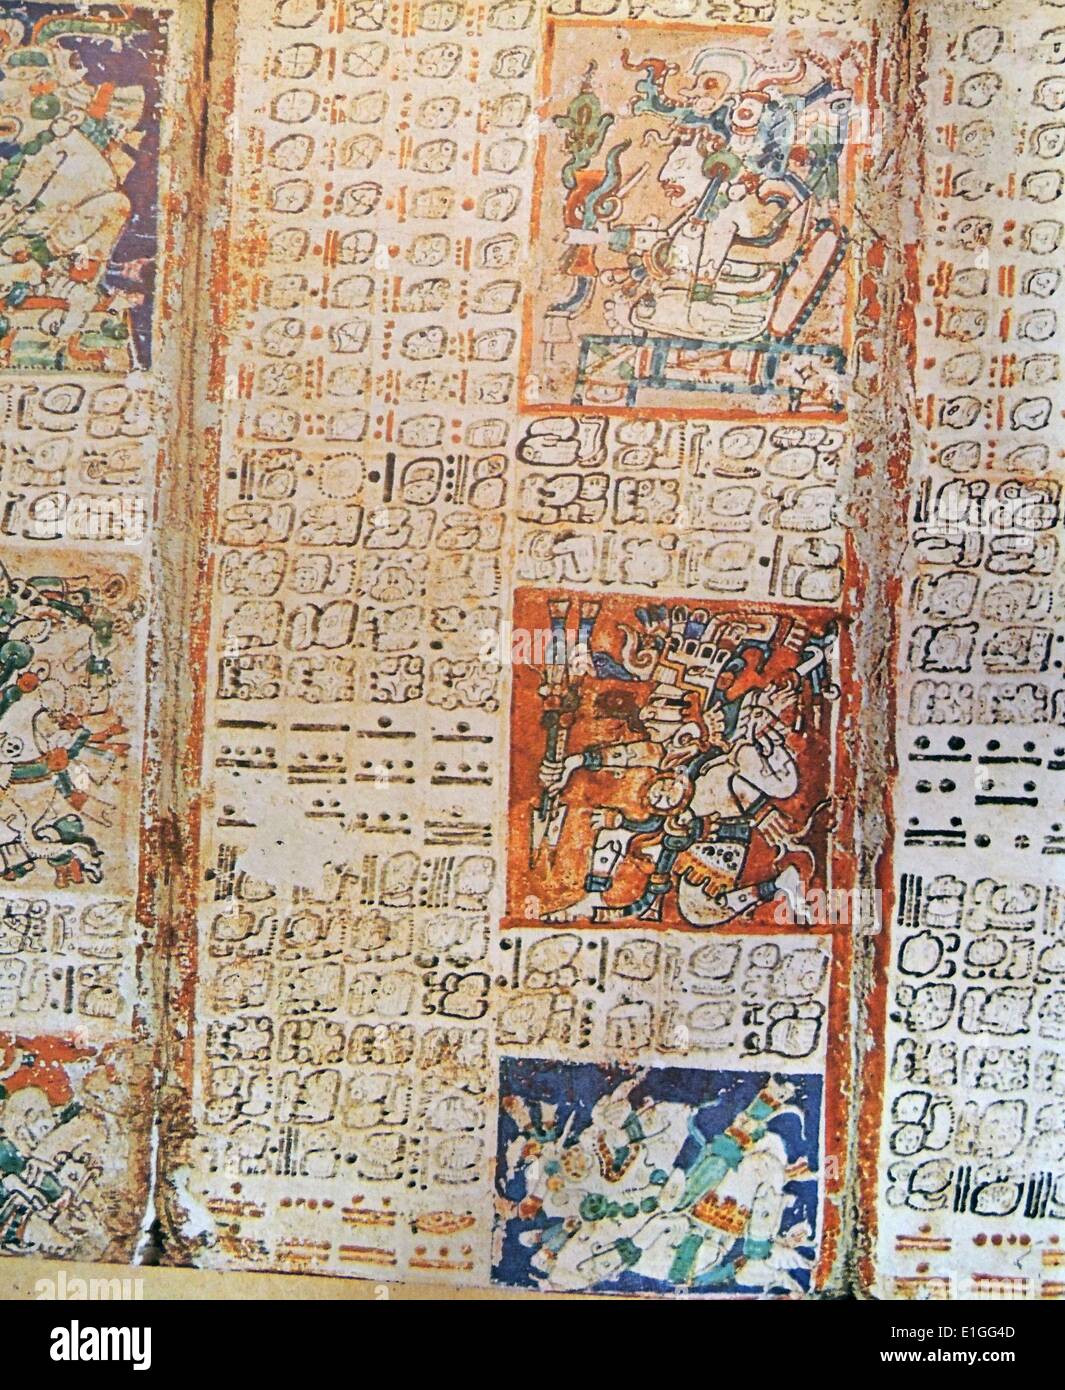 Detail aus der Dresdner Codex. Eine präkolumbische Maya-Buch des 11. Jahrhunderts der Yukatekischen Maya in Chichén Itzá. Stockfoto